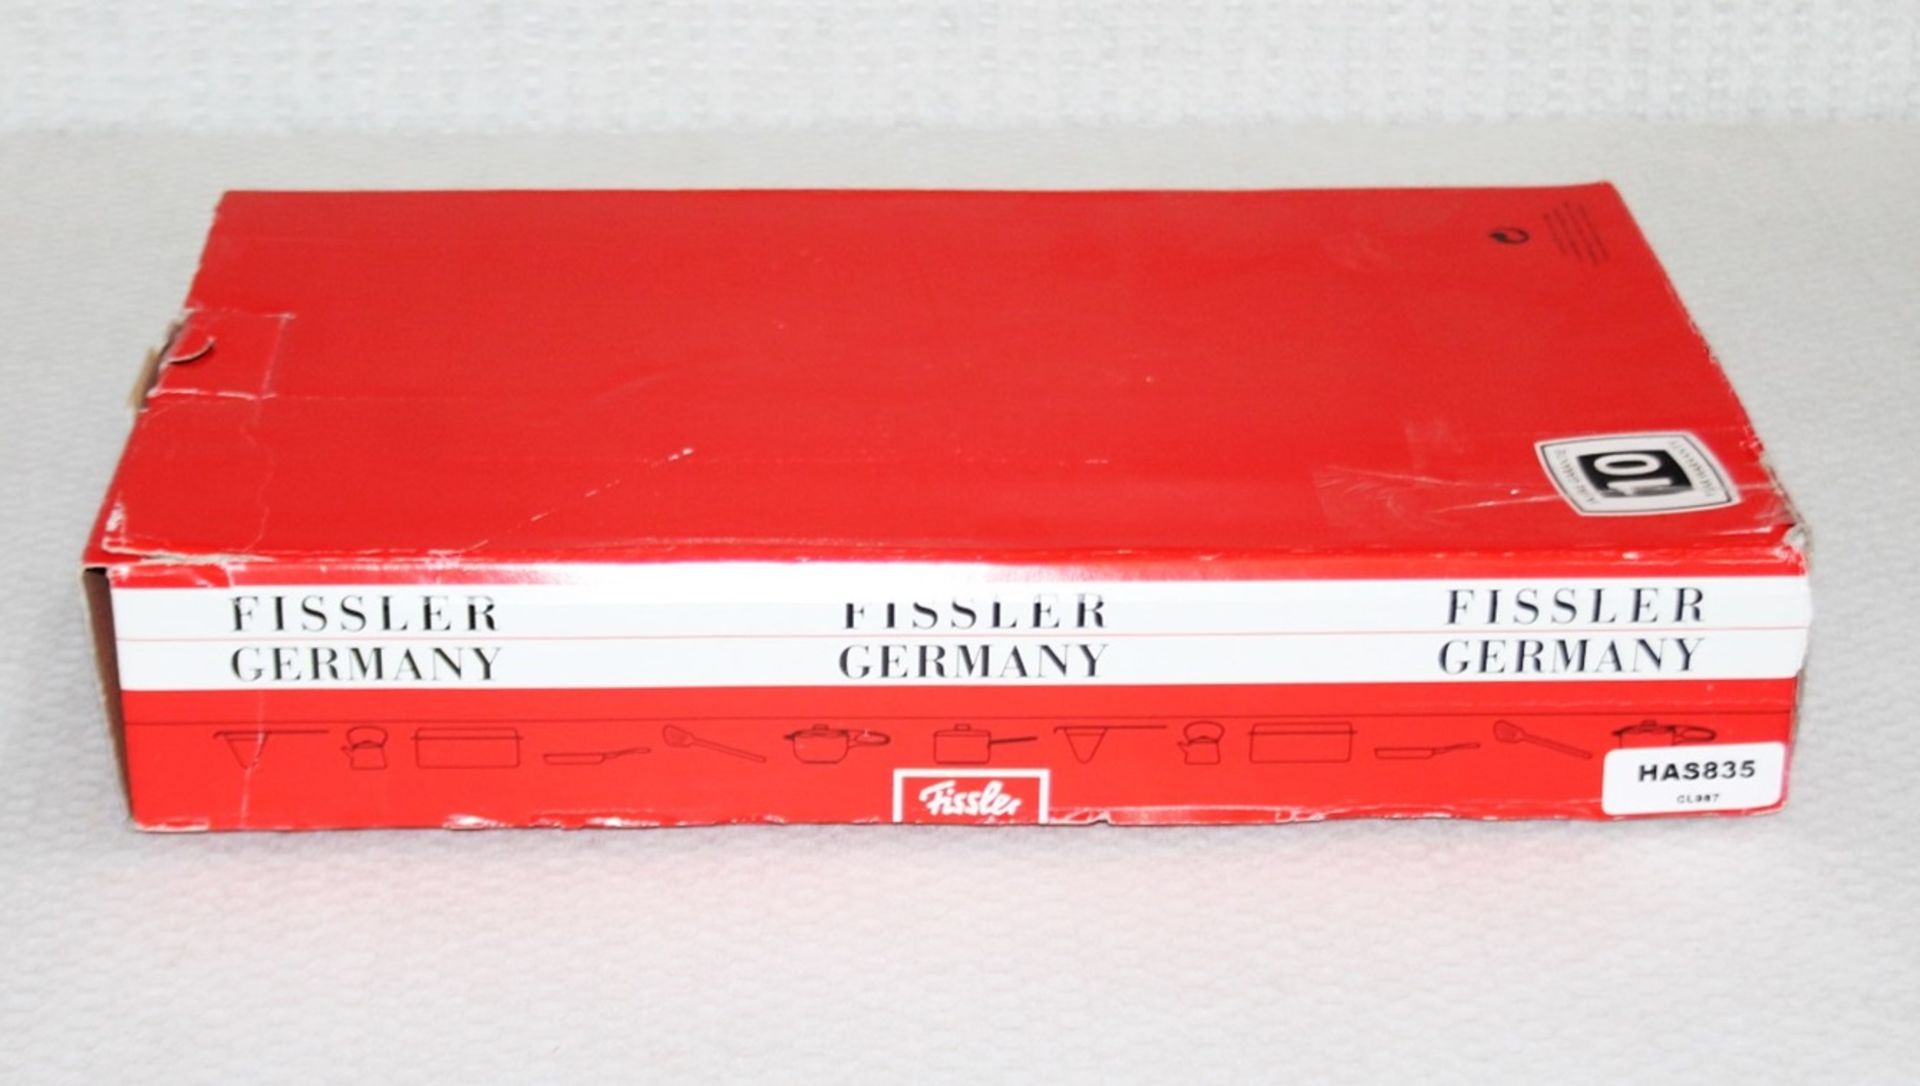 1 x FISSLER Original-Profi Frying Pan- Original Price £120.00 - Unused Boxed Stock - Ref: HAS835/ - Image 7 of 8